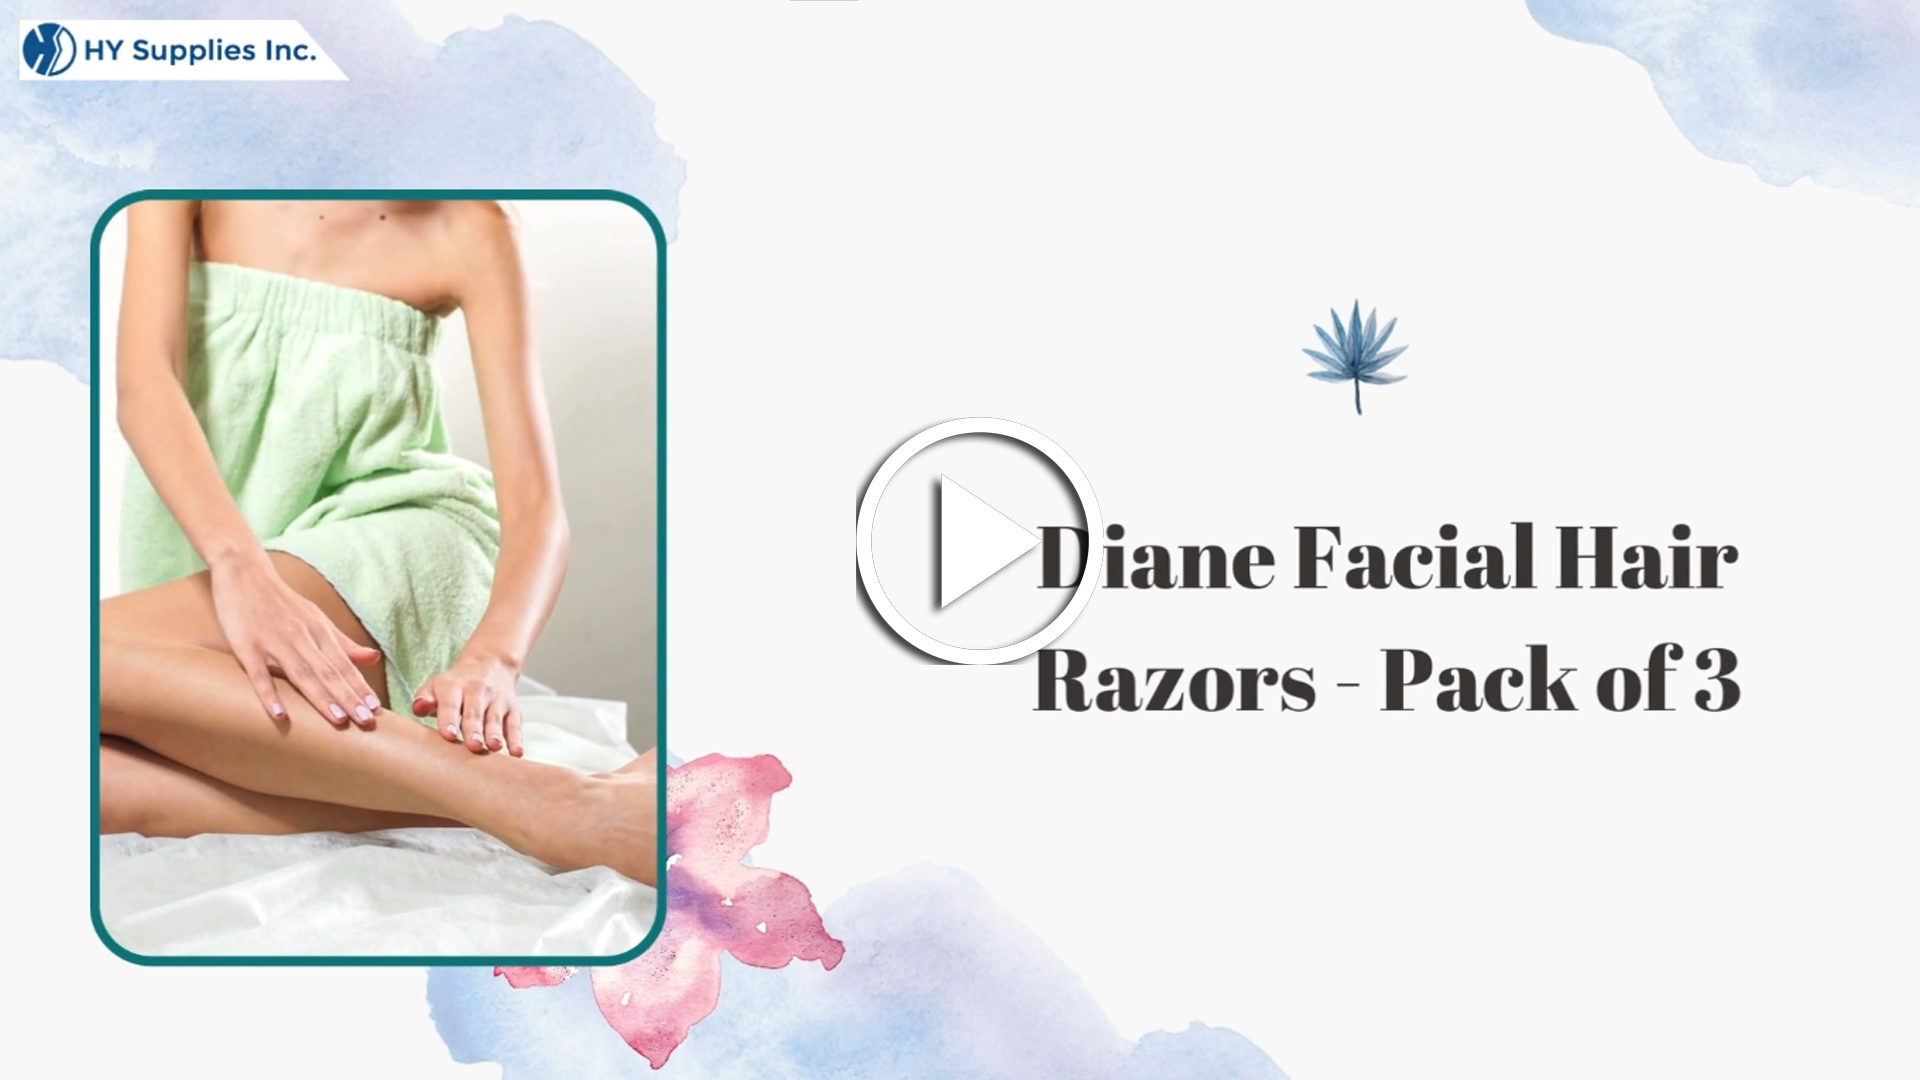 Diane Facial Hair Razors - Pack of 3